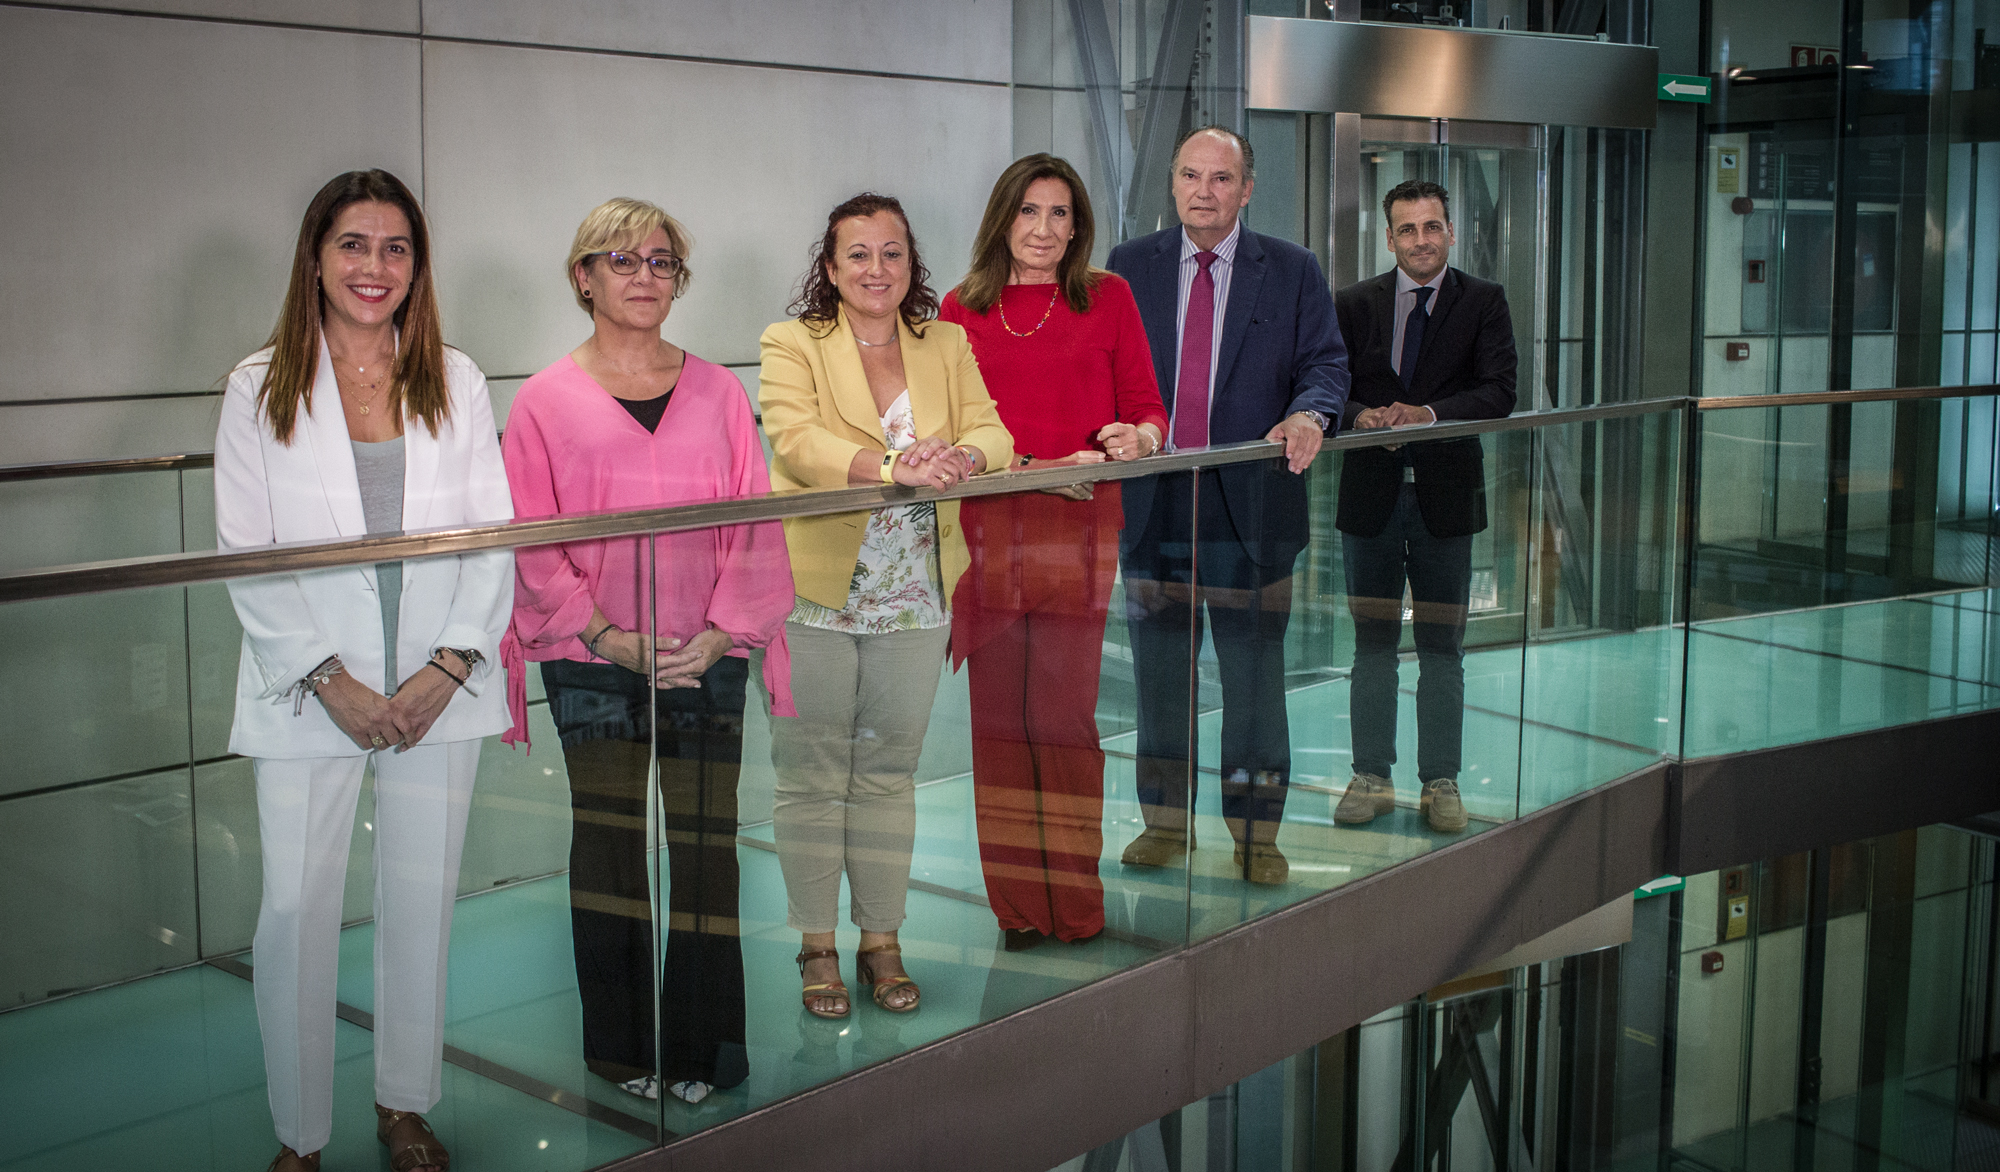 Anecoop, Incubadora con Valores, Witrac i Schneider Electric, s'alcen amb el guardó dels VII Premis a l'Excel·lència d'Unió Professional de València